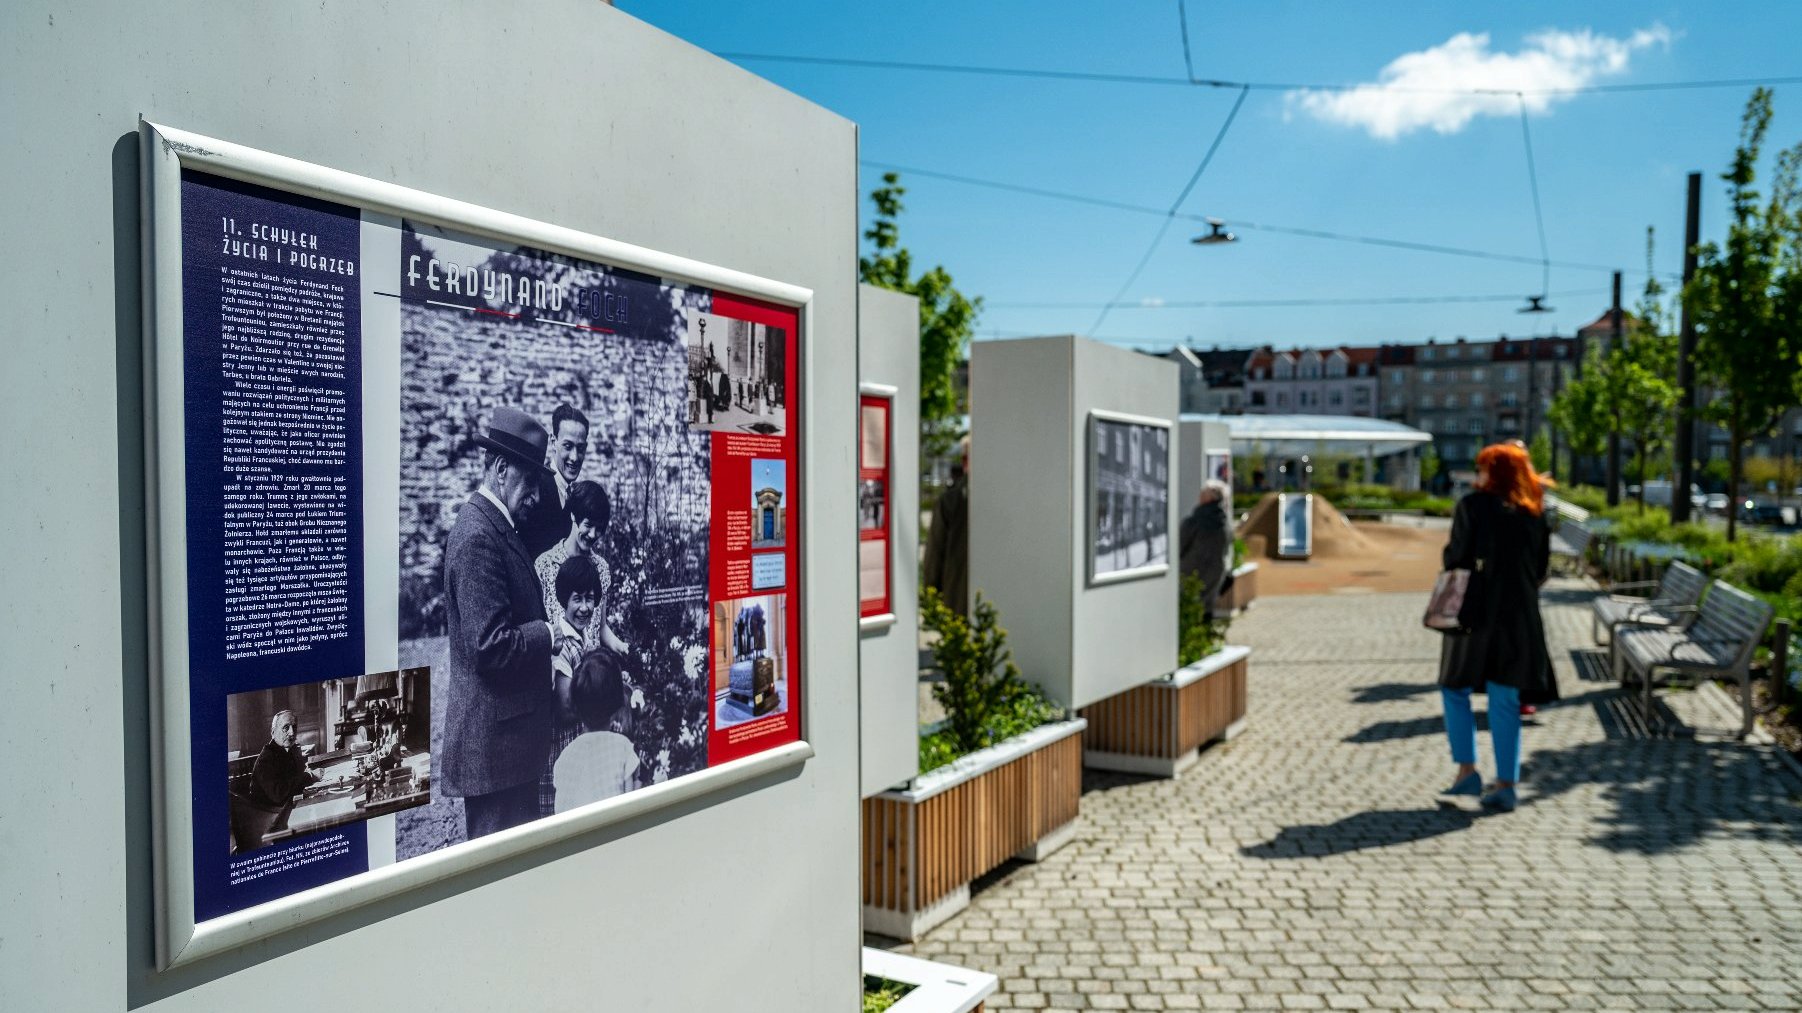 Galeria zdjęć przedstawia otwarcie wystawy o marszałku Fochu. Na fotografiach widać ludzi oglądającyh ekspozycję oraz plansze wystawy z tekstem i zdjęciami. - grafika artykułu